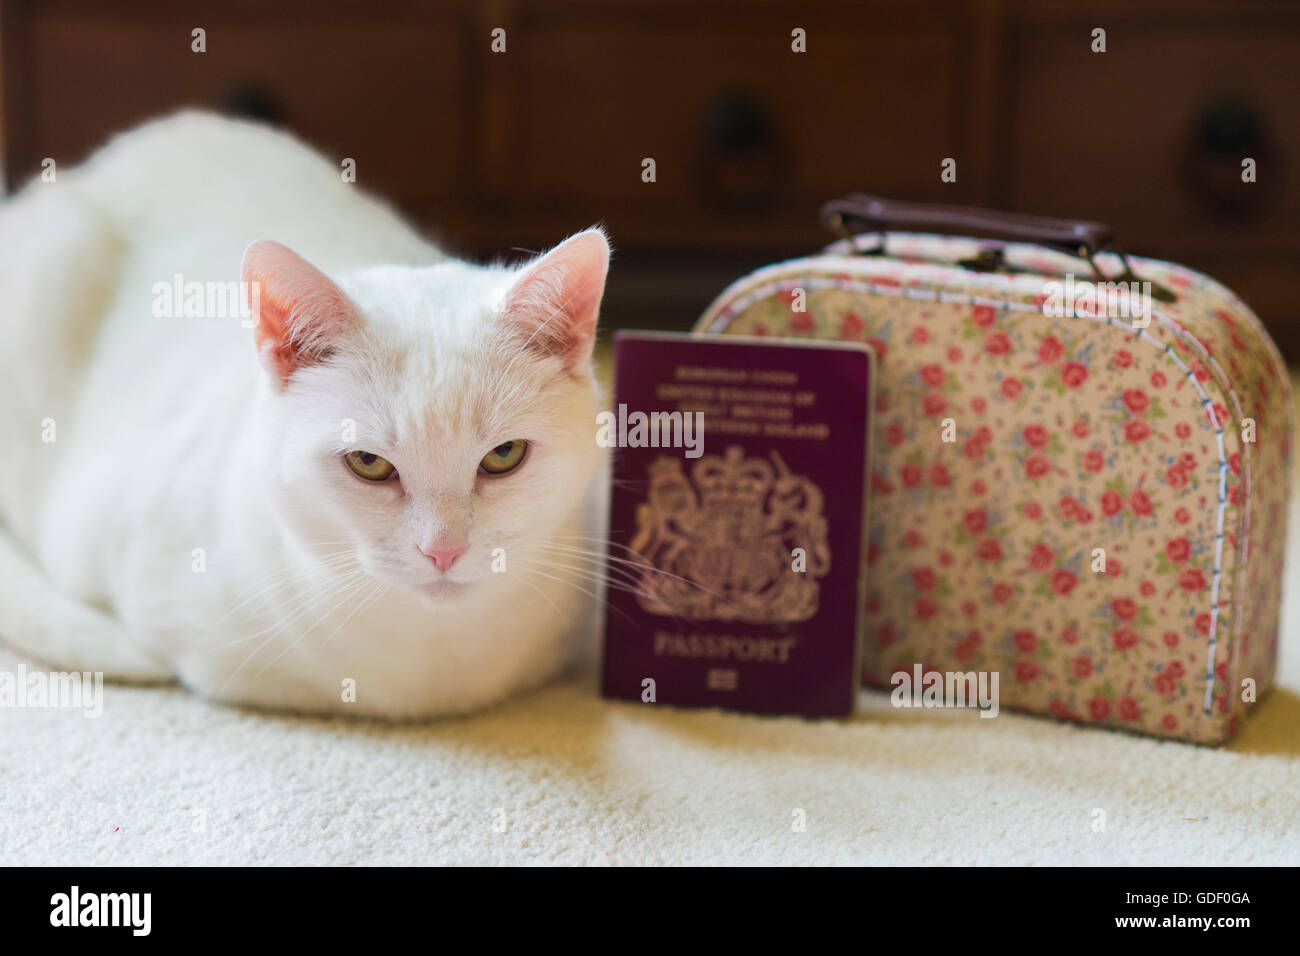 Un chat blanc est assis à côté d'une valise et d'un passeport Banque D'Images